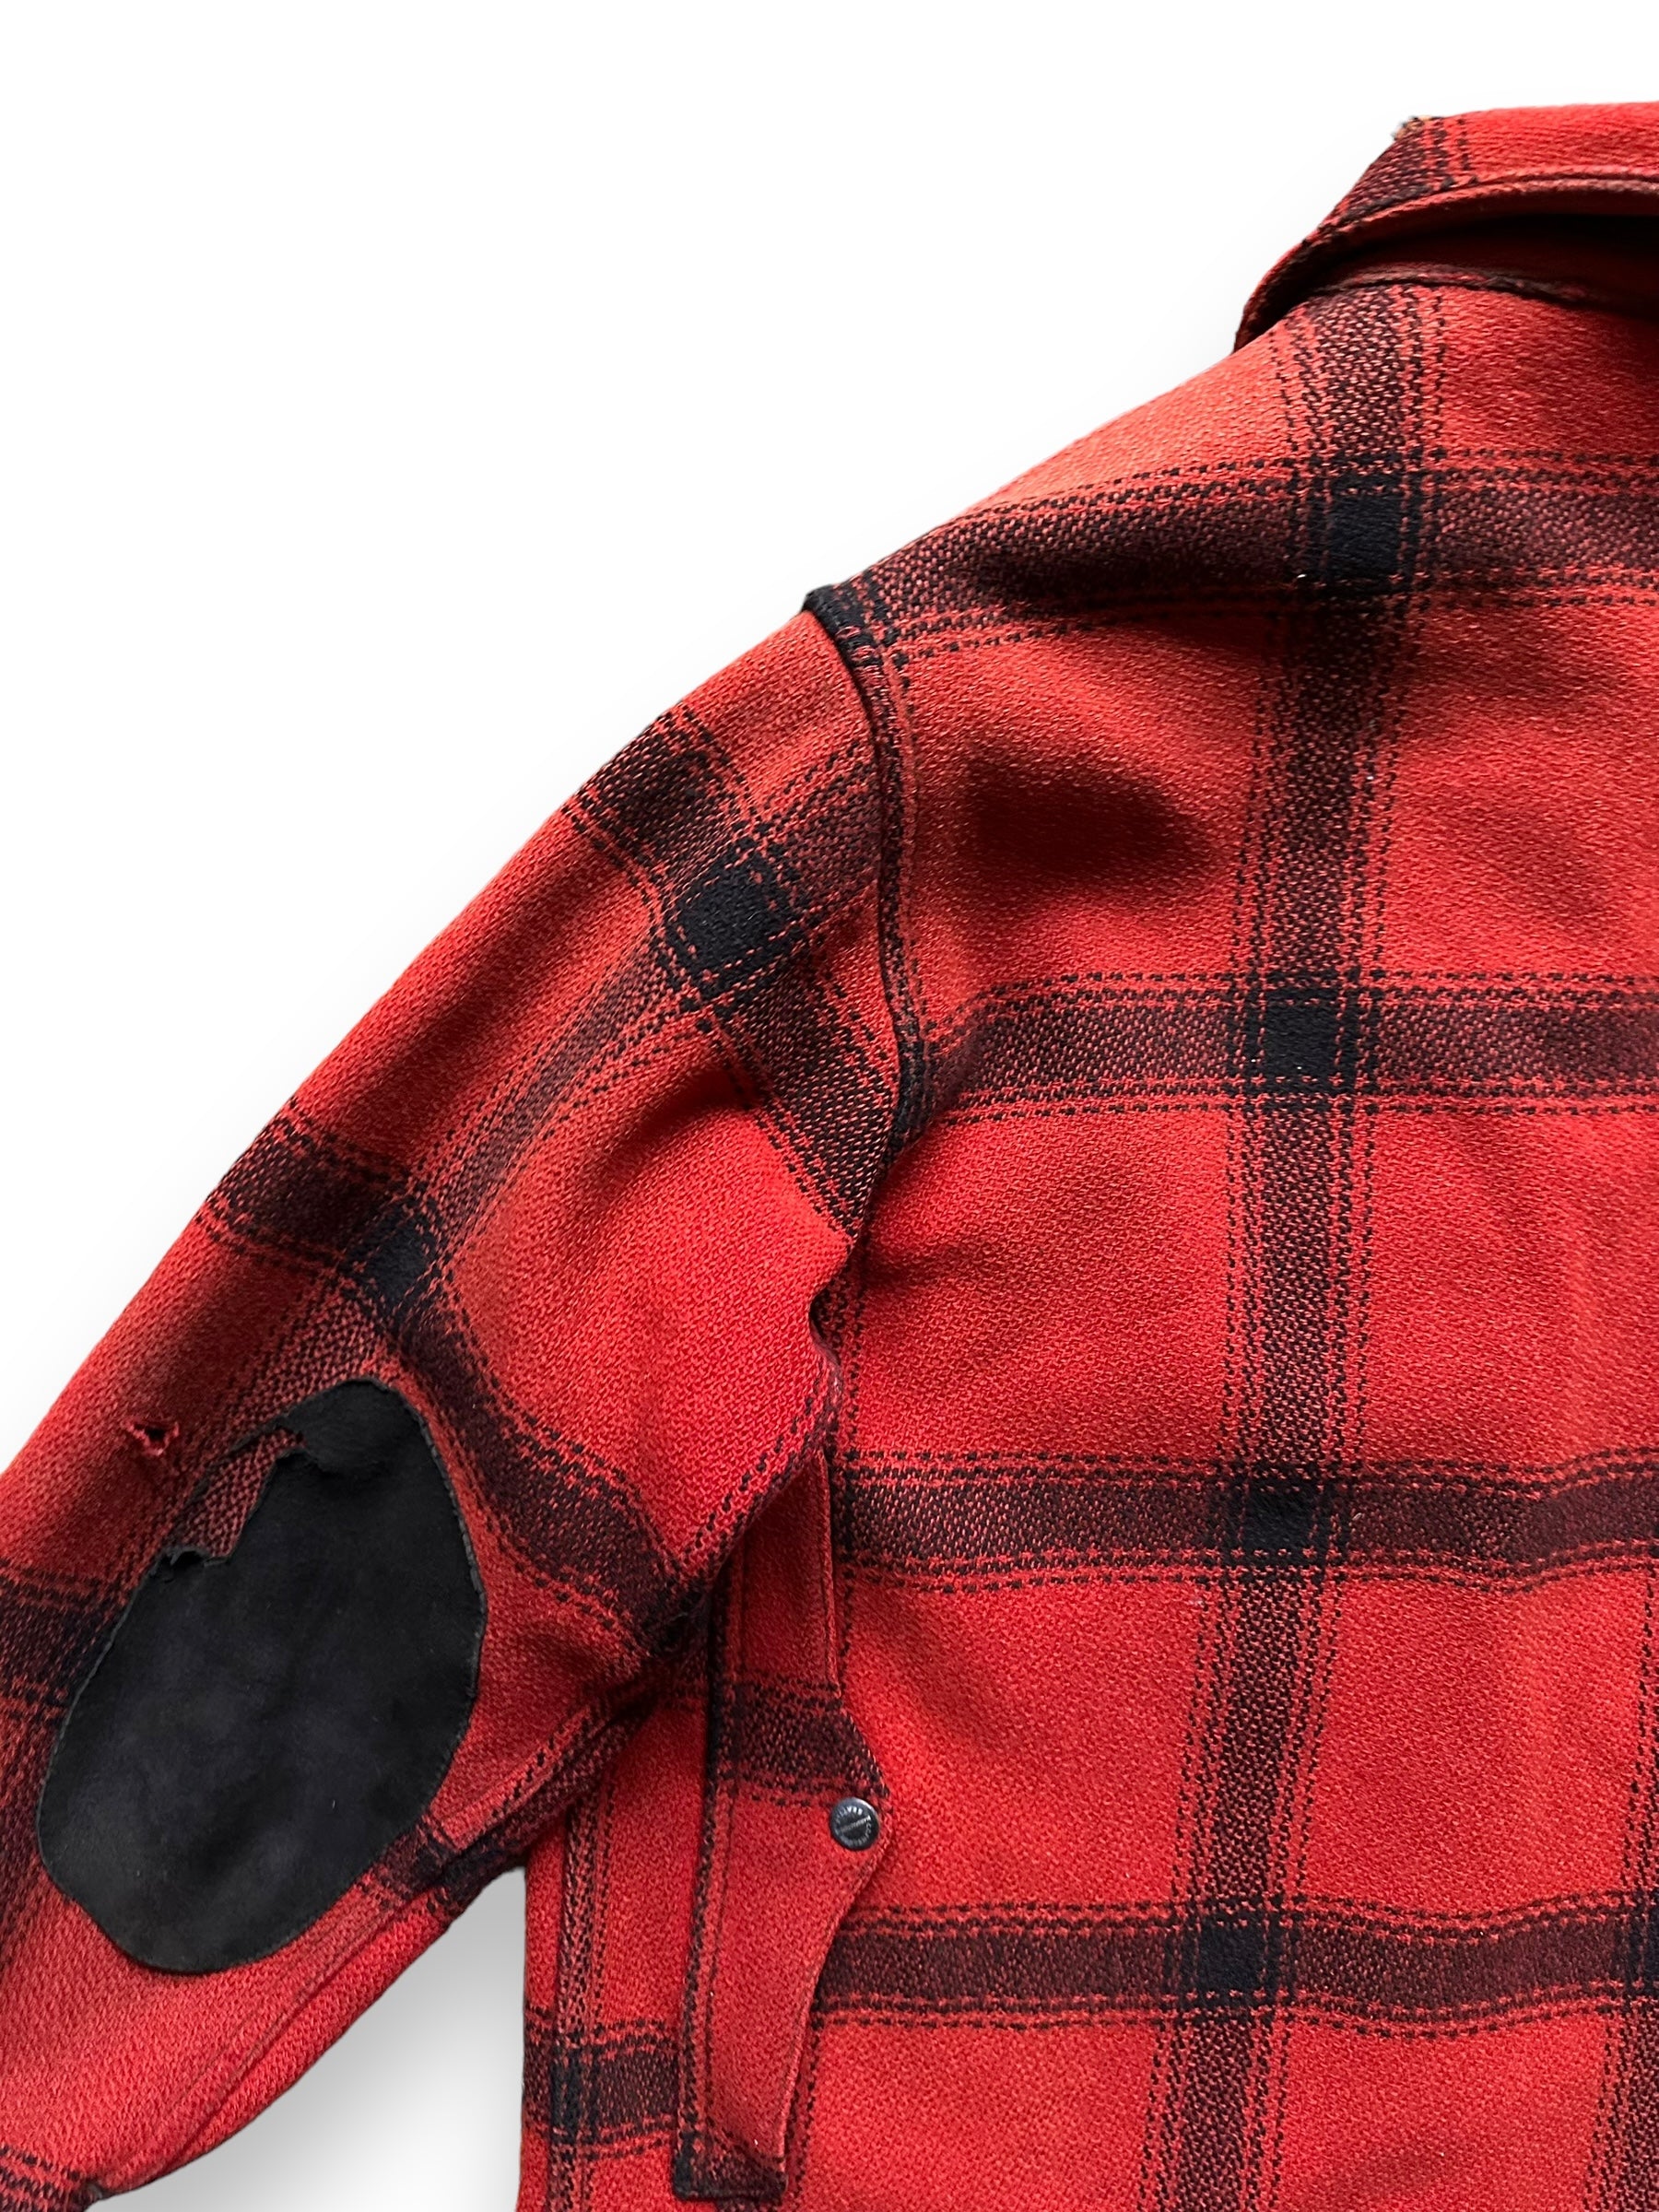 Rear Left Shoulder View of Vintage 75% Red Filson Hunter Wool Jacket SZ 44 | Vintage Filson Workwear Seattle | Vintage Workwear Seattle